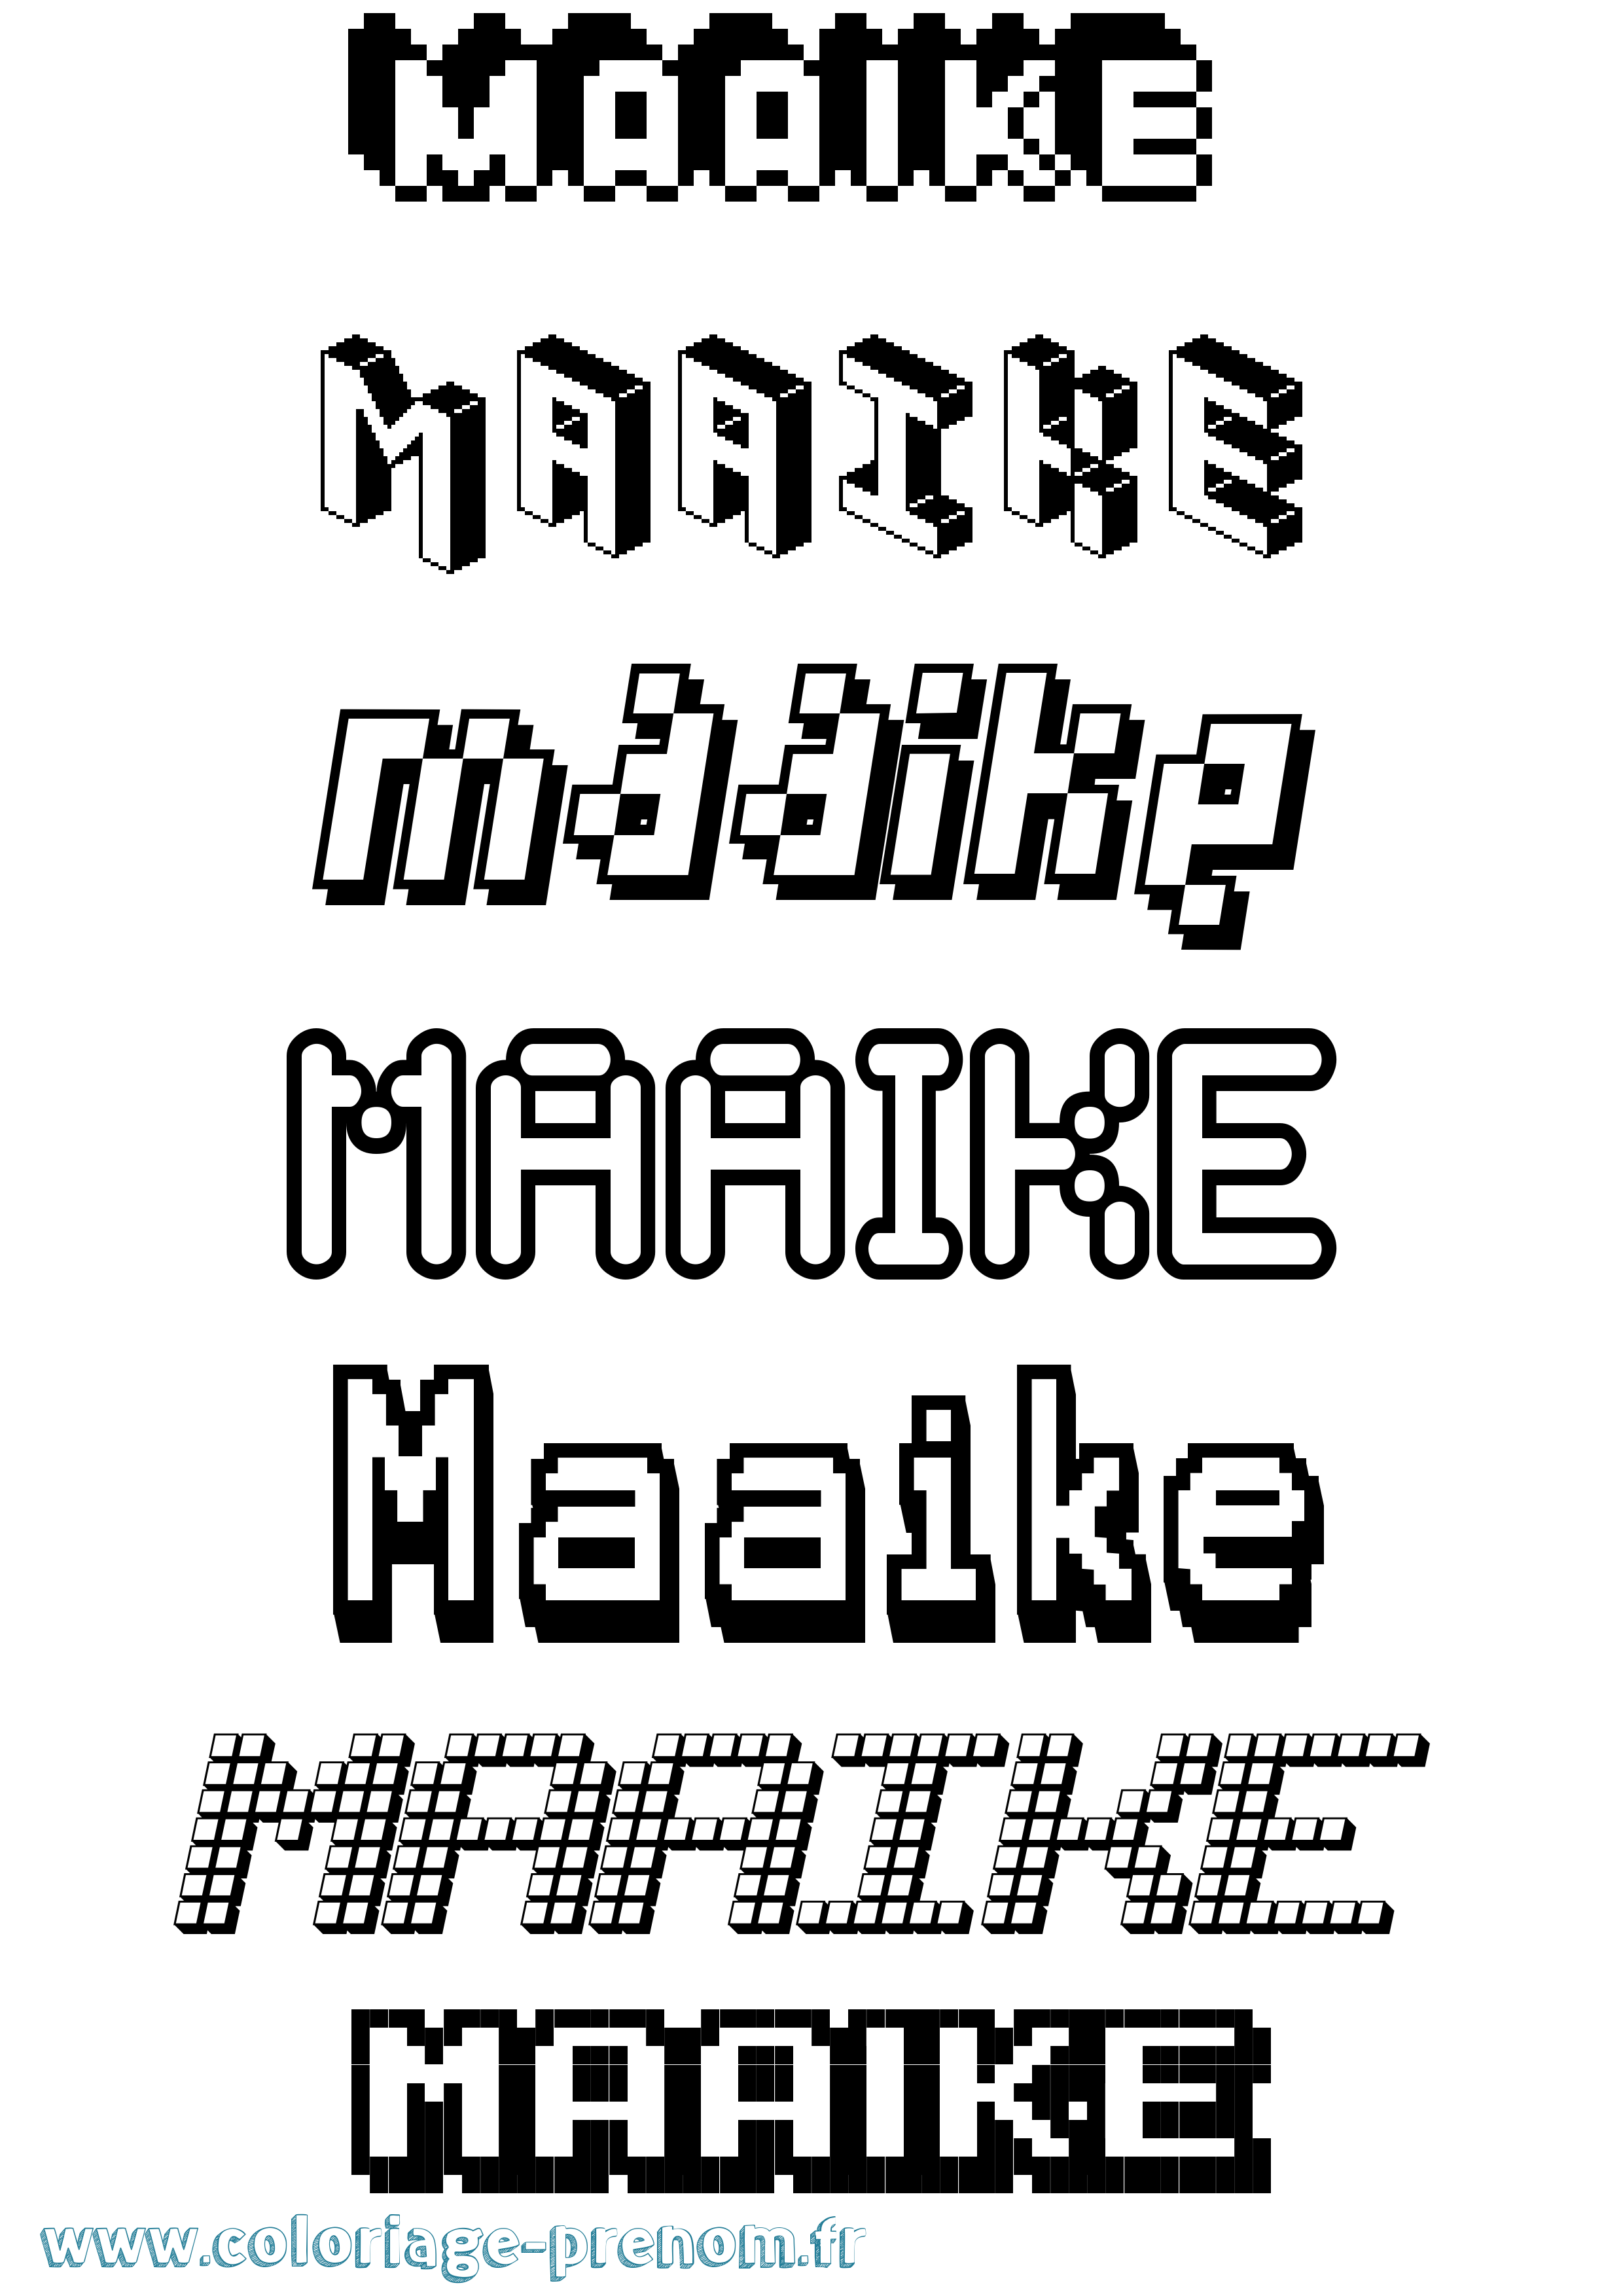 Coloriage prénom Maaike Pixel